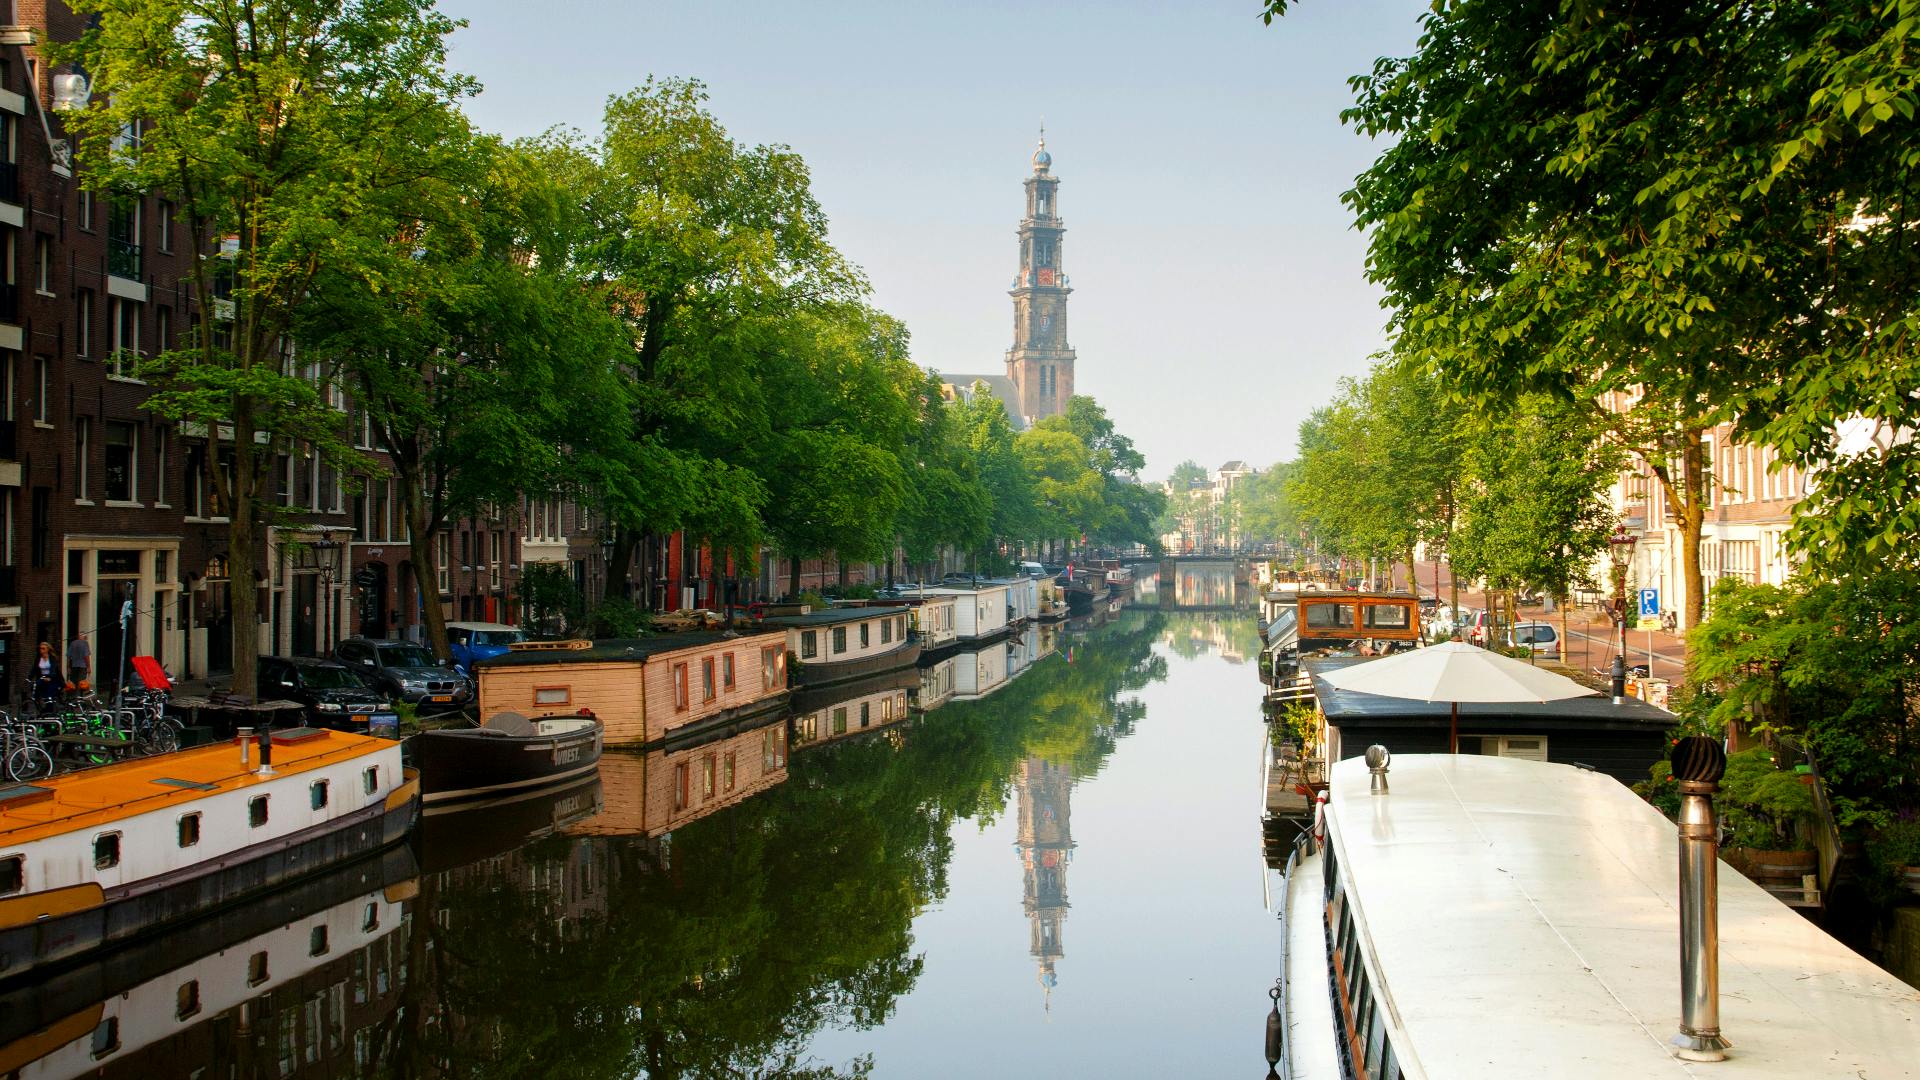 Caminata de descubrimiento autoguiada en el barrio de Jordaan en Ámsterdam